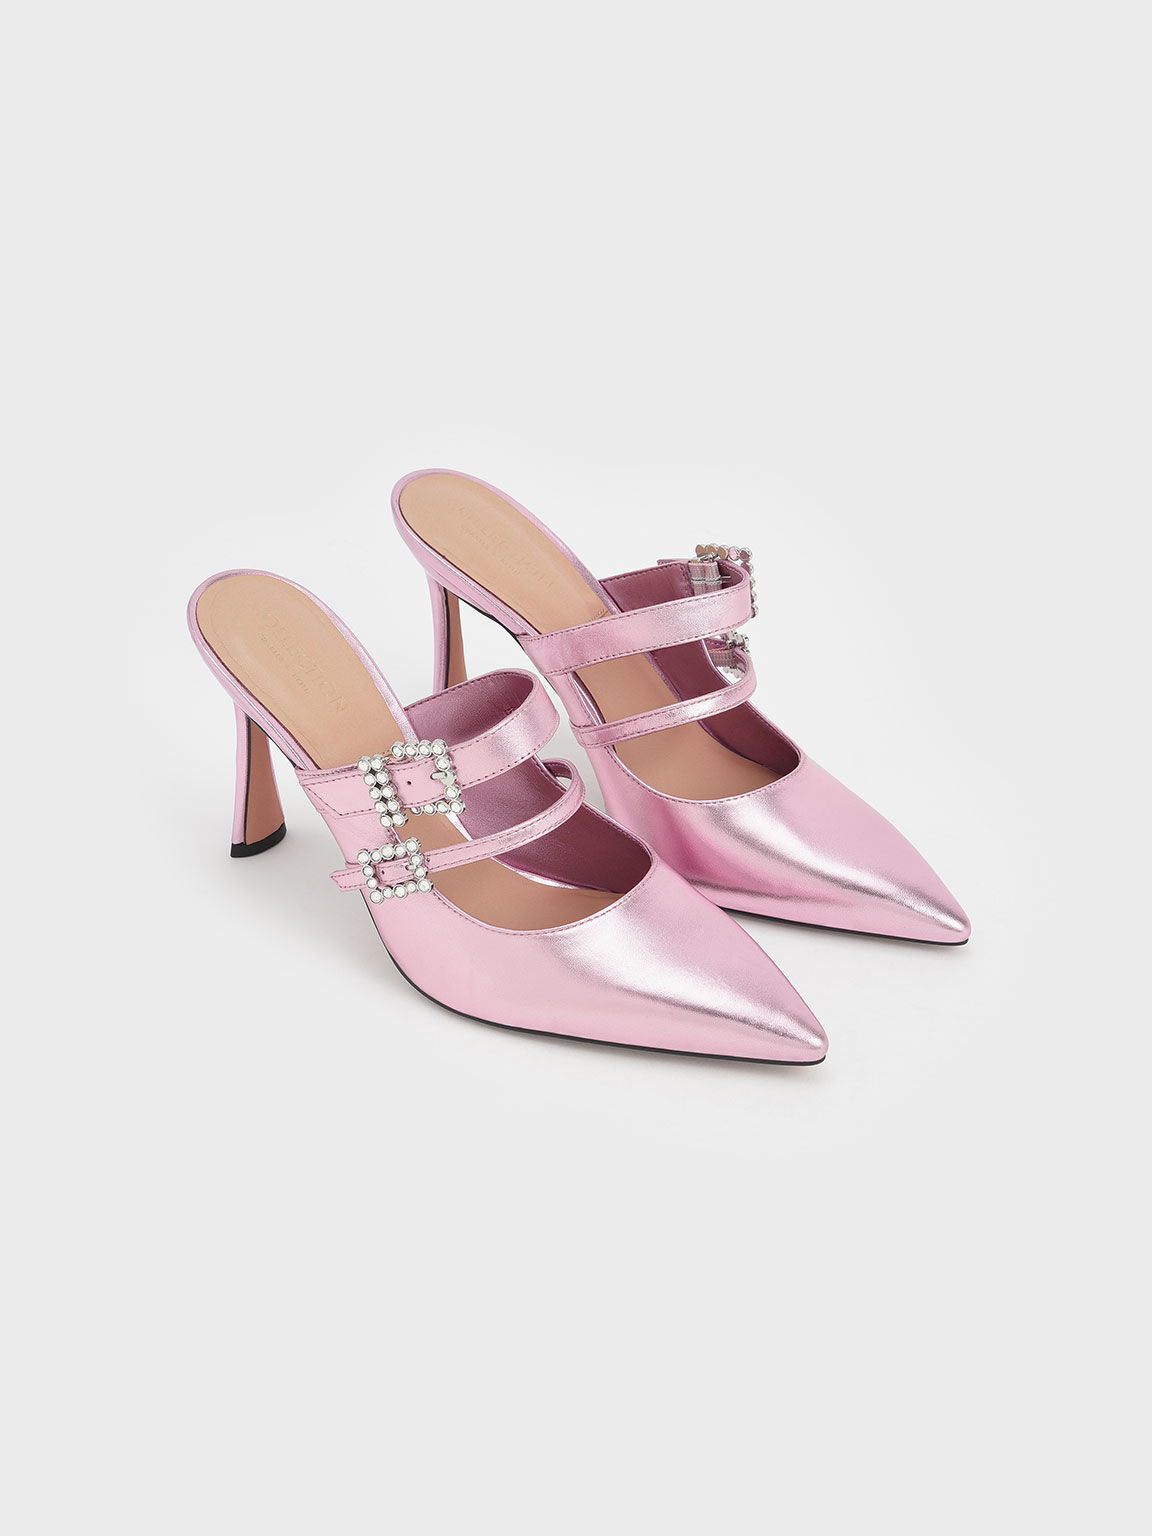 Leather Gem-Embellished Stiletto Mules, Pink, hi-res